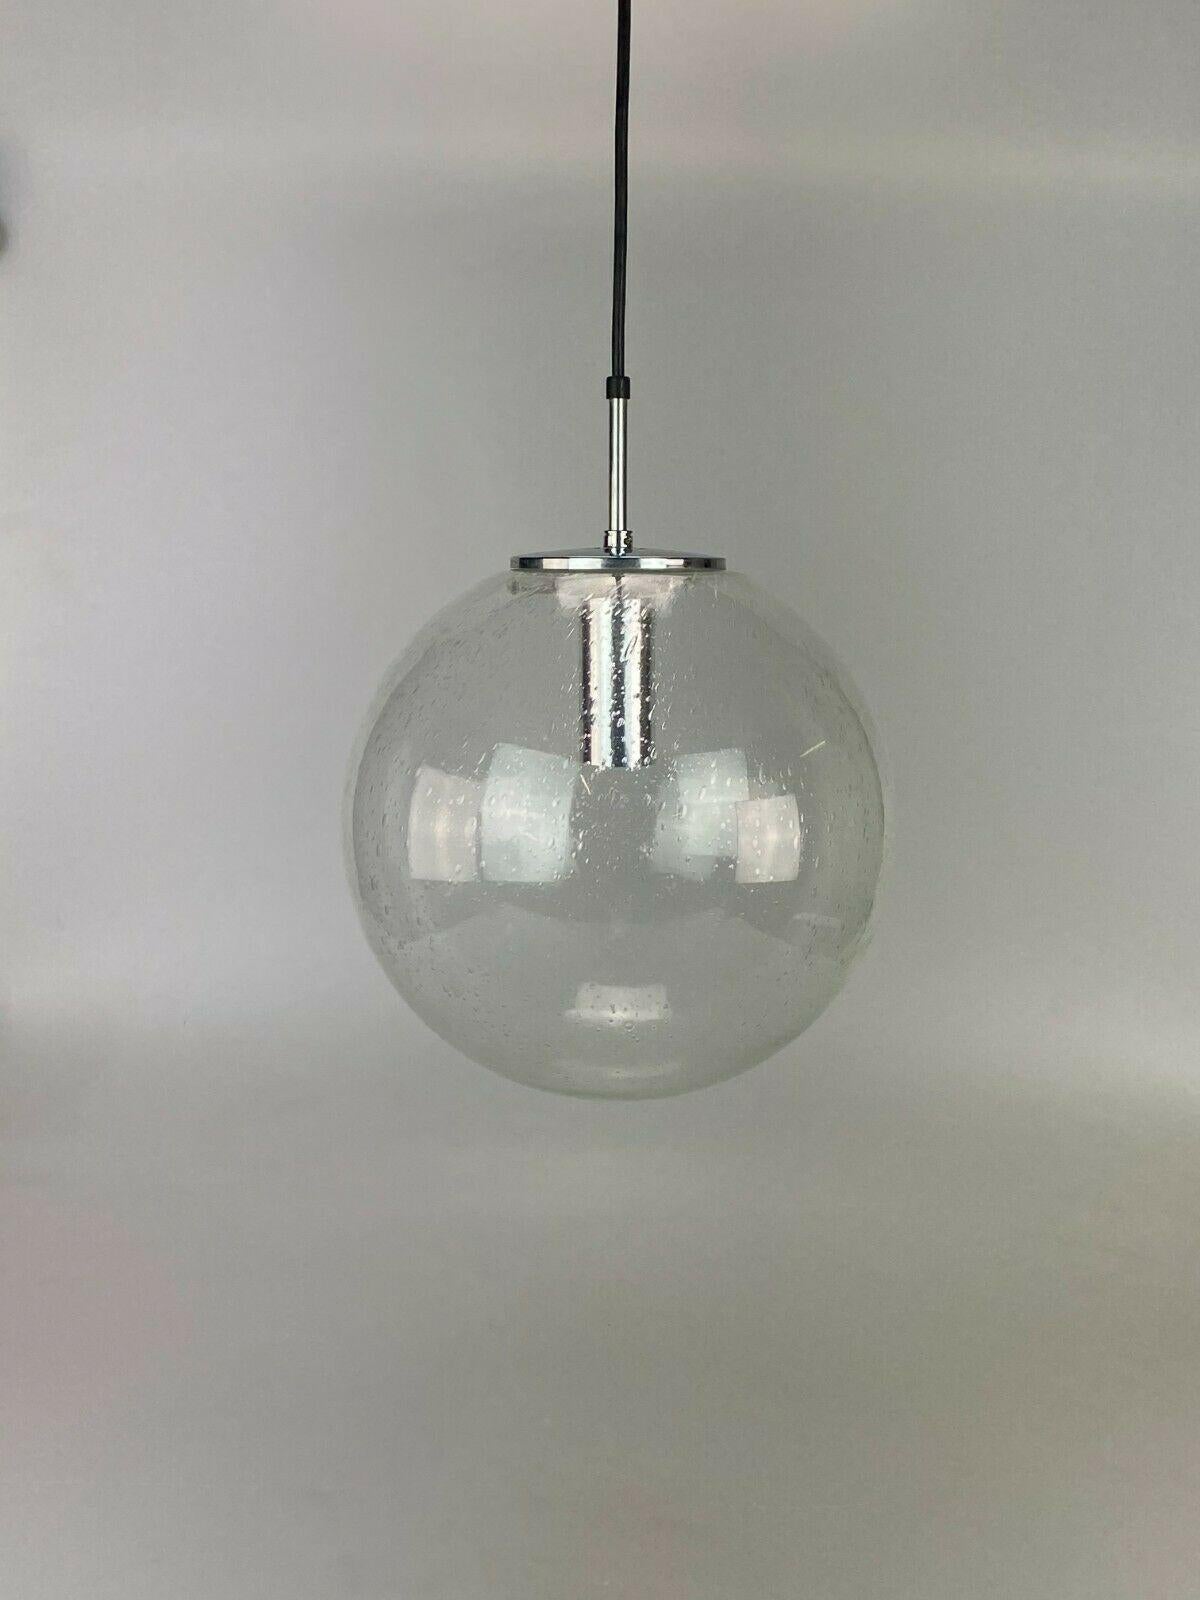 Glass XL 60s 70s Lamp Light Ceiling Lamp Limburg Spherical Lamp Ball Design  For Sale